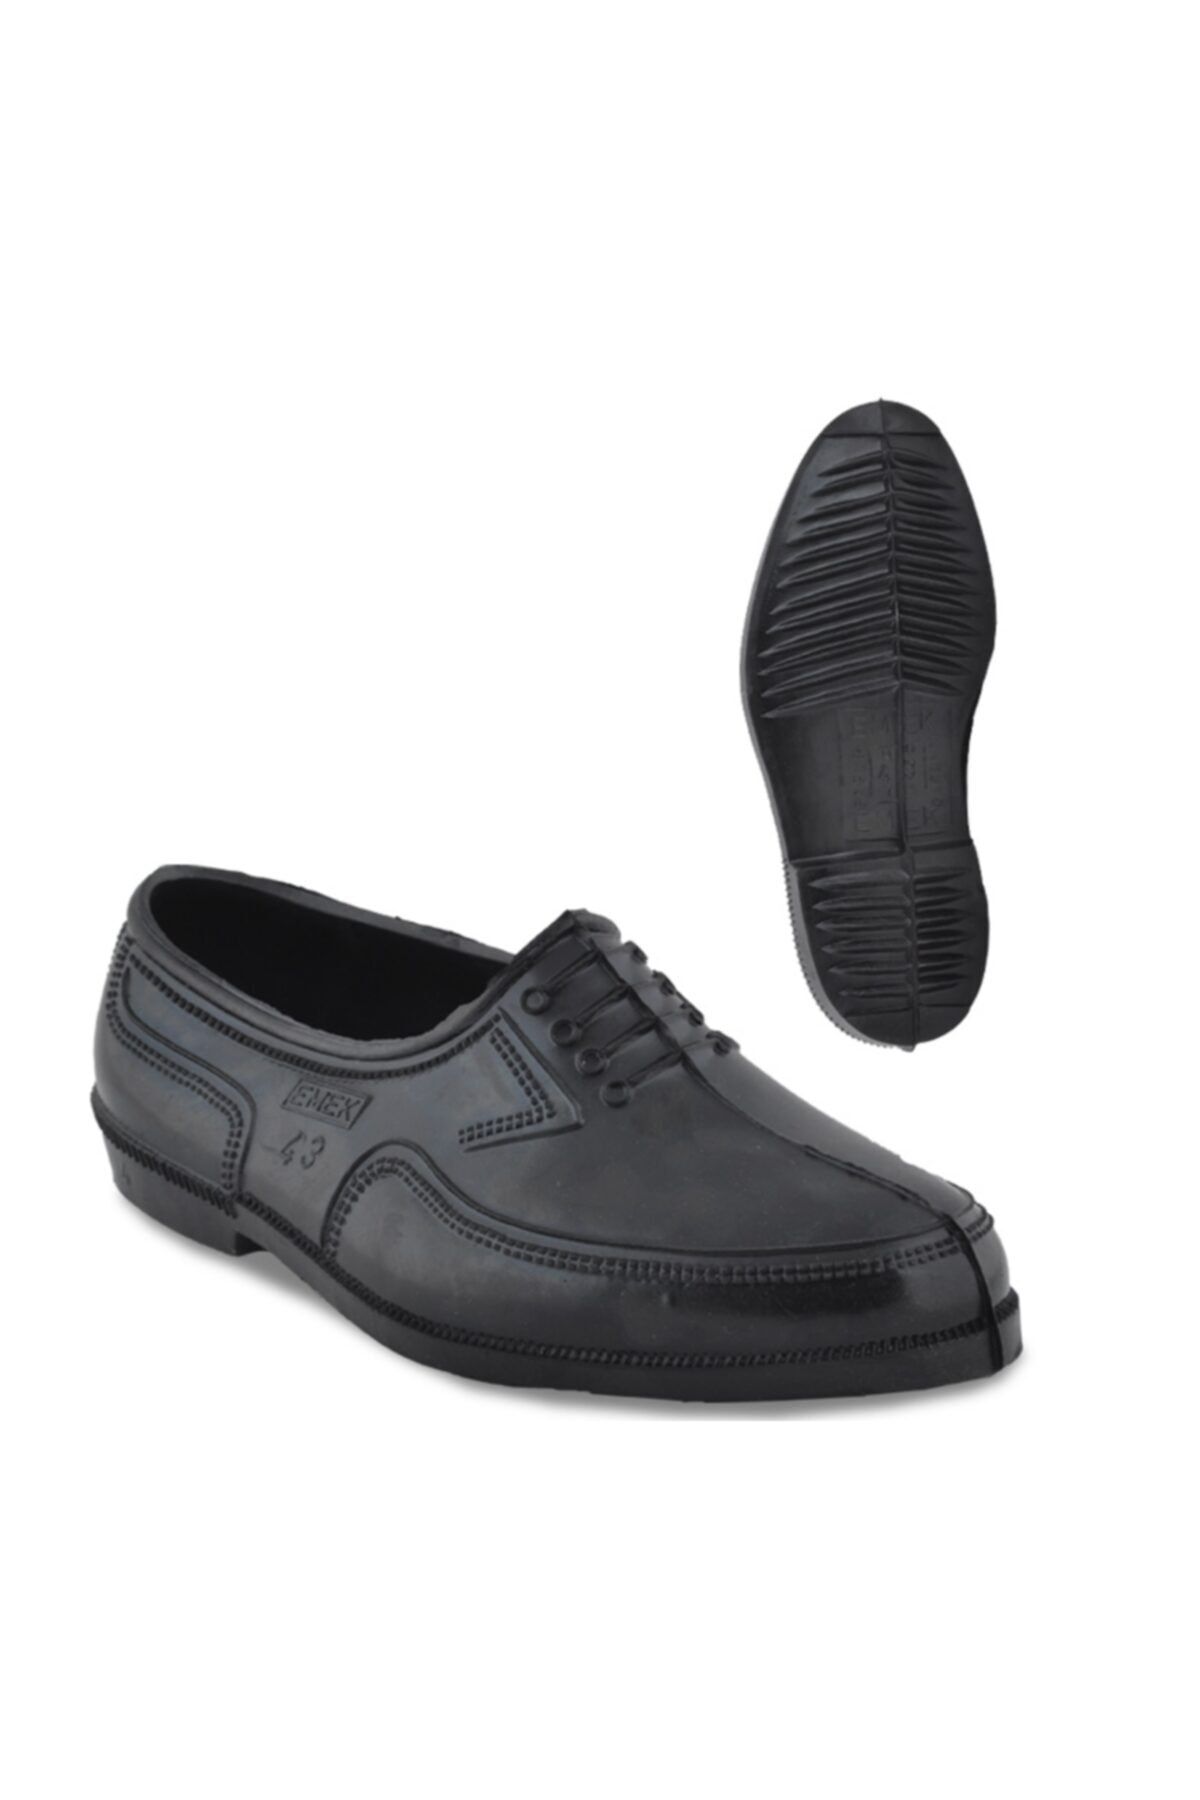 Emek Erkek Siyah Kara Lastik Trabzon Lastiği Ayakkabı